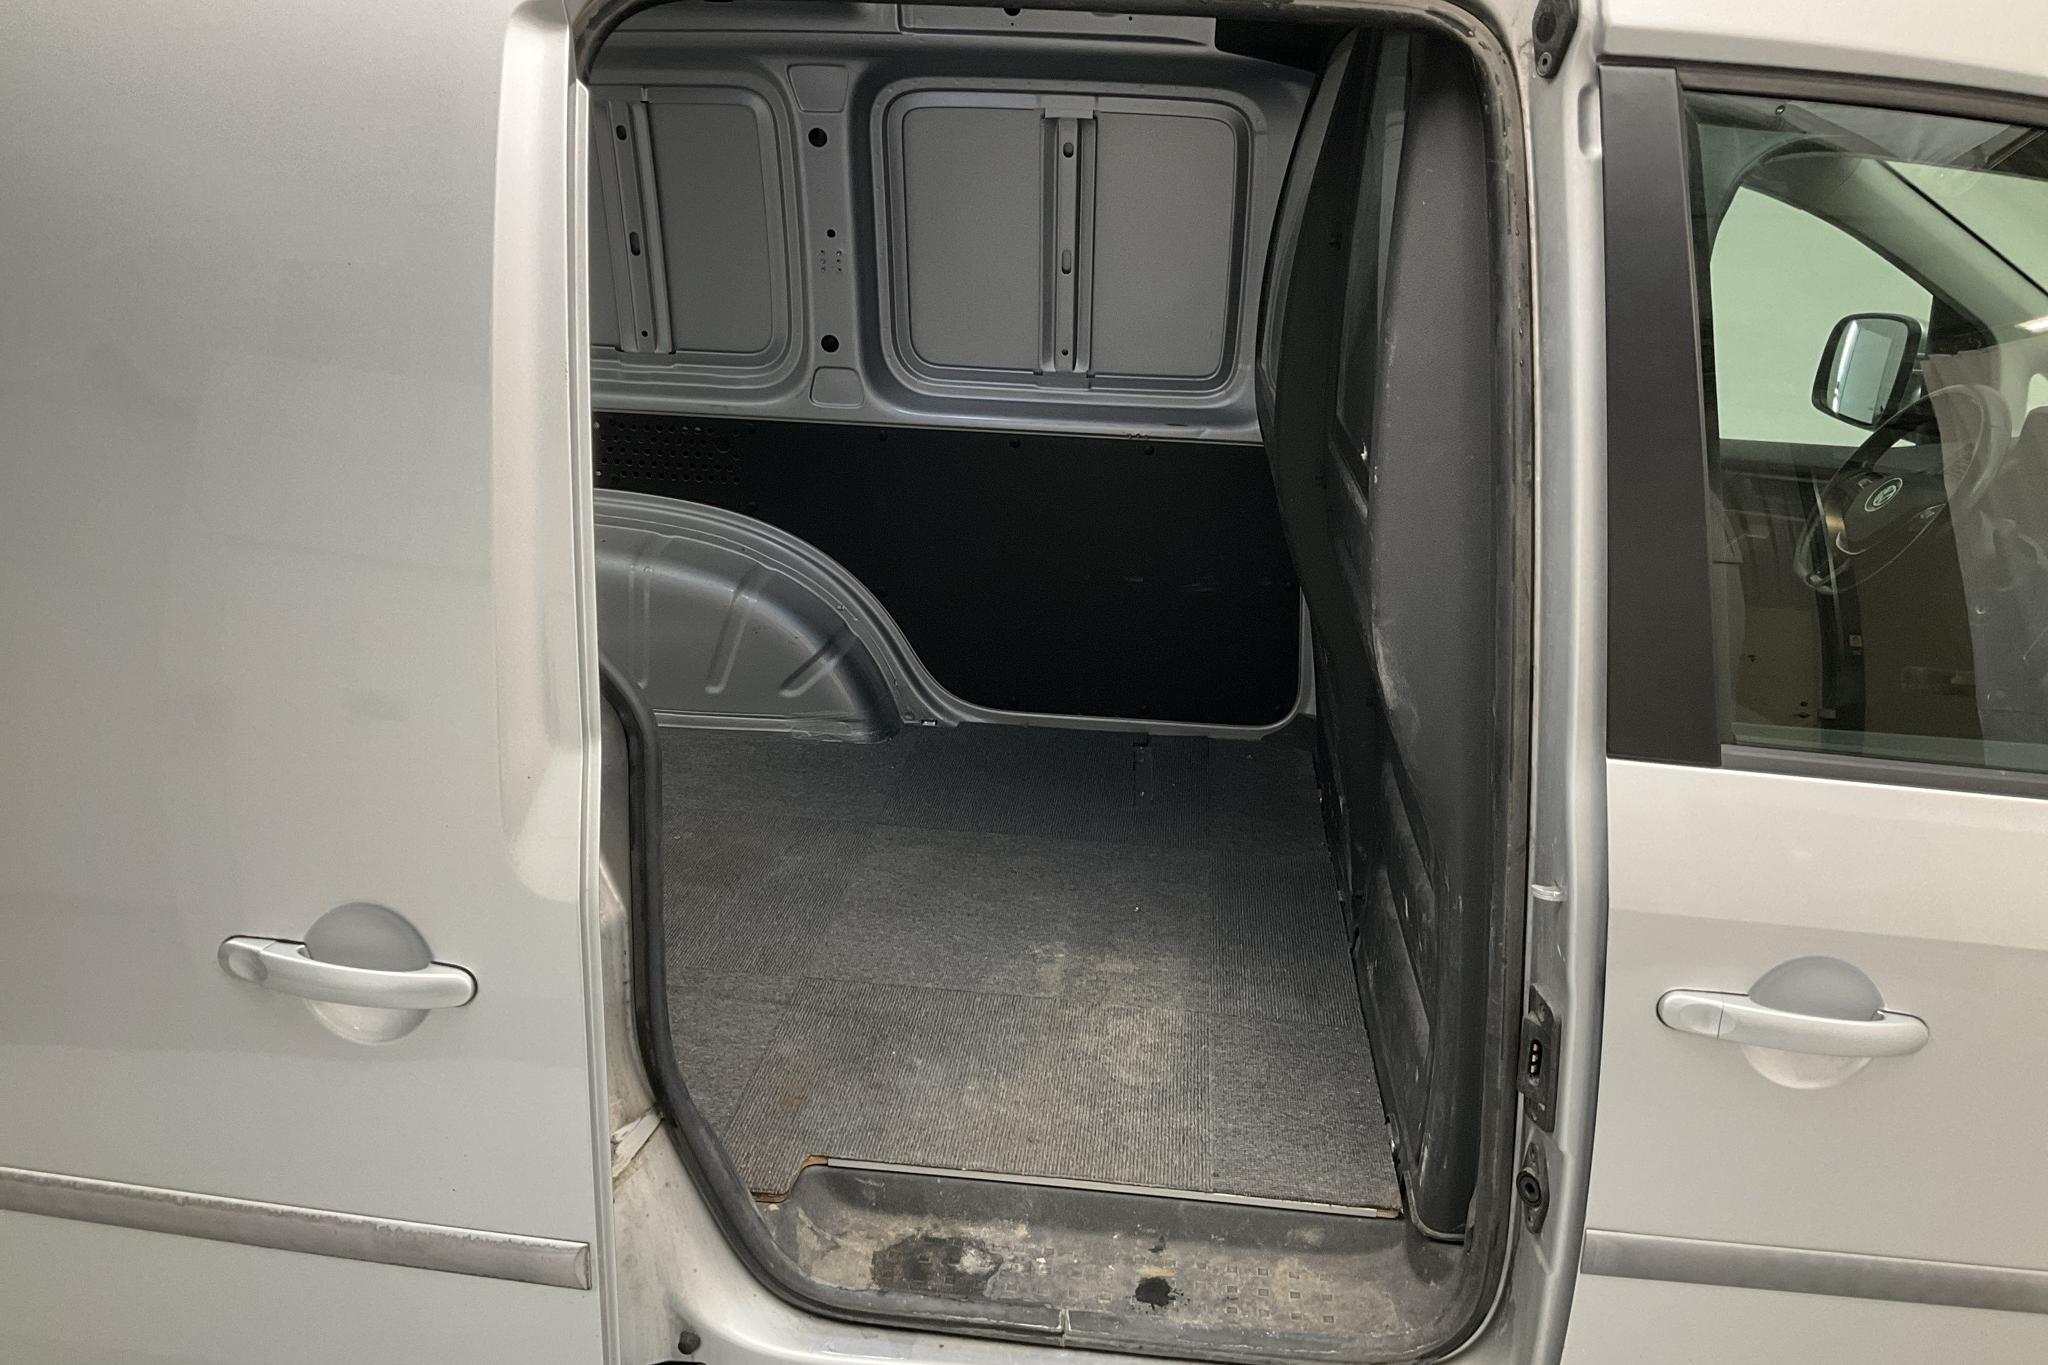 VW Caddy 1.2 TSI Skåp (84hk) - 81 120 km - Manual - silver - 2019